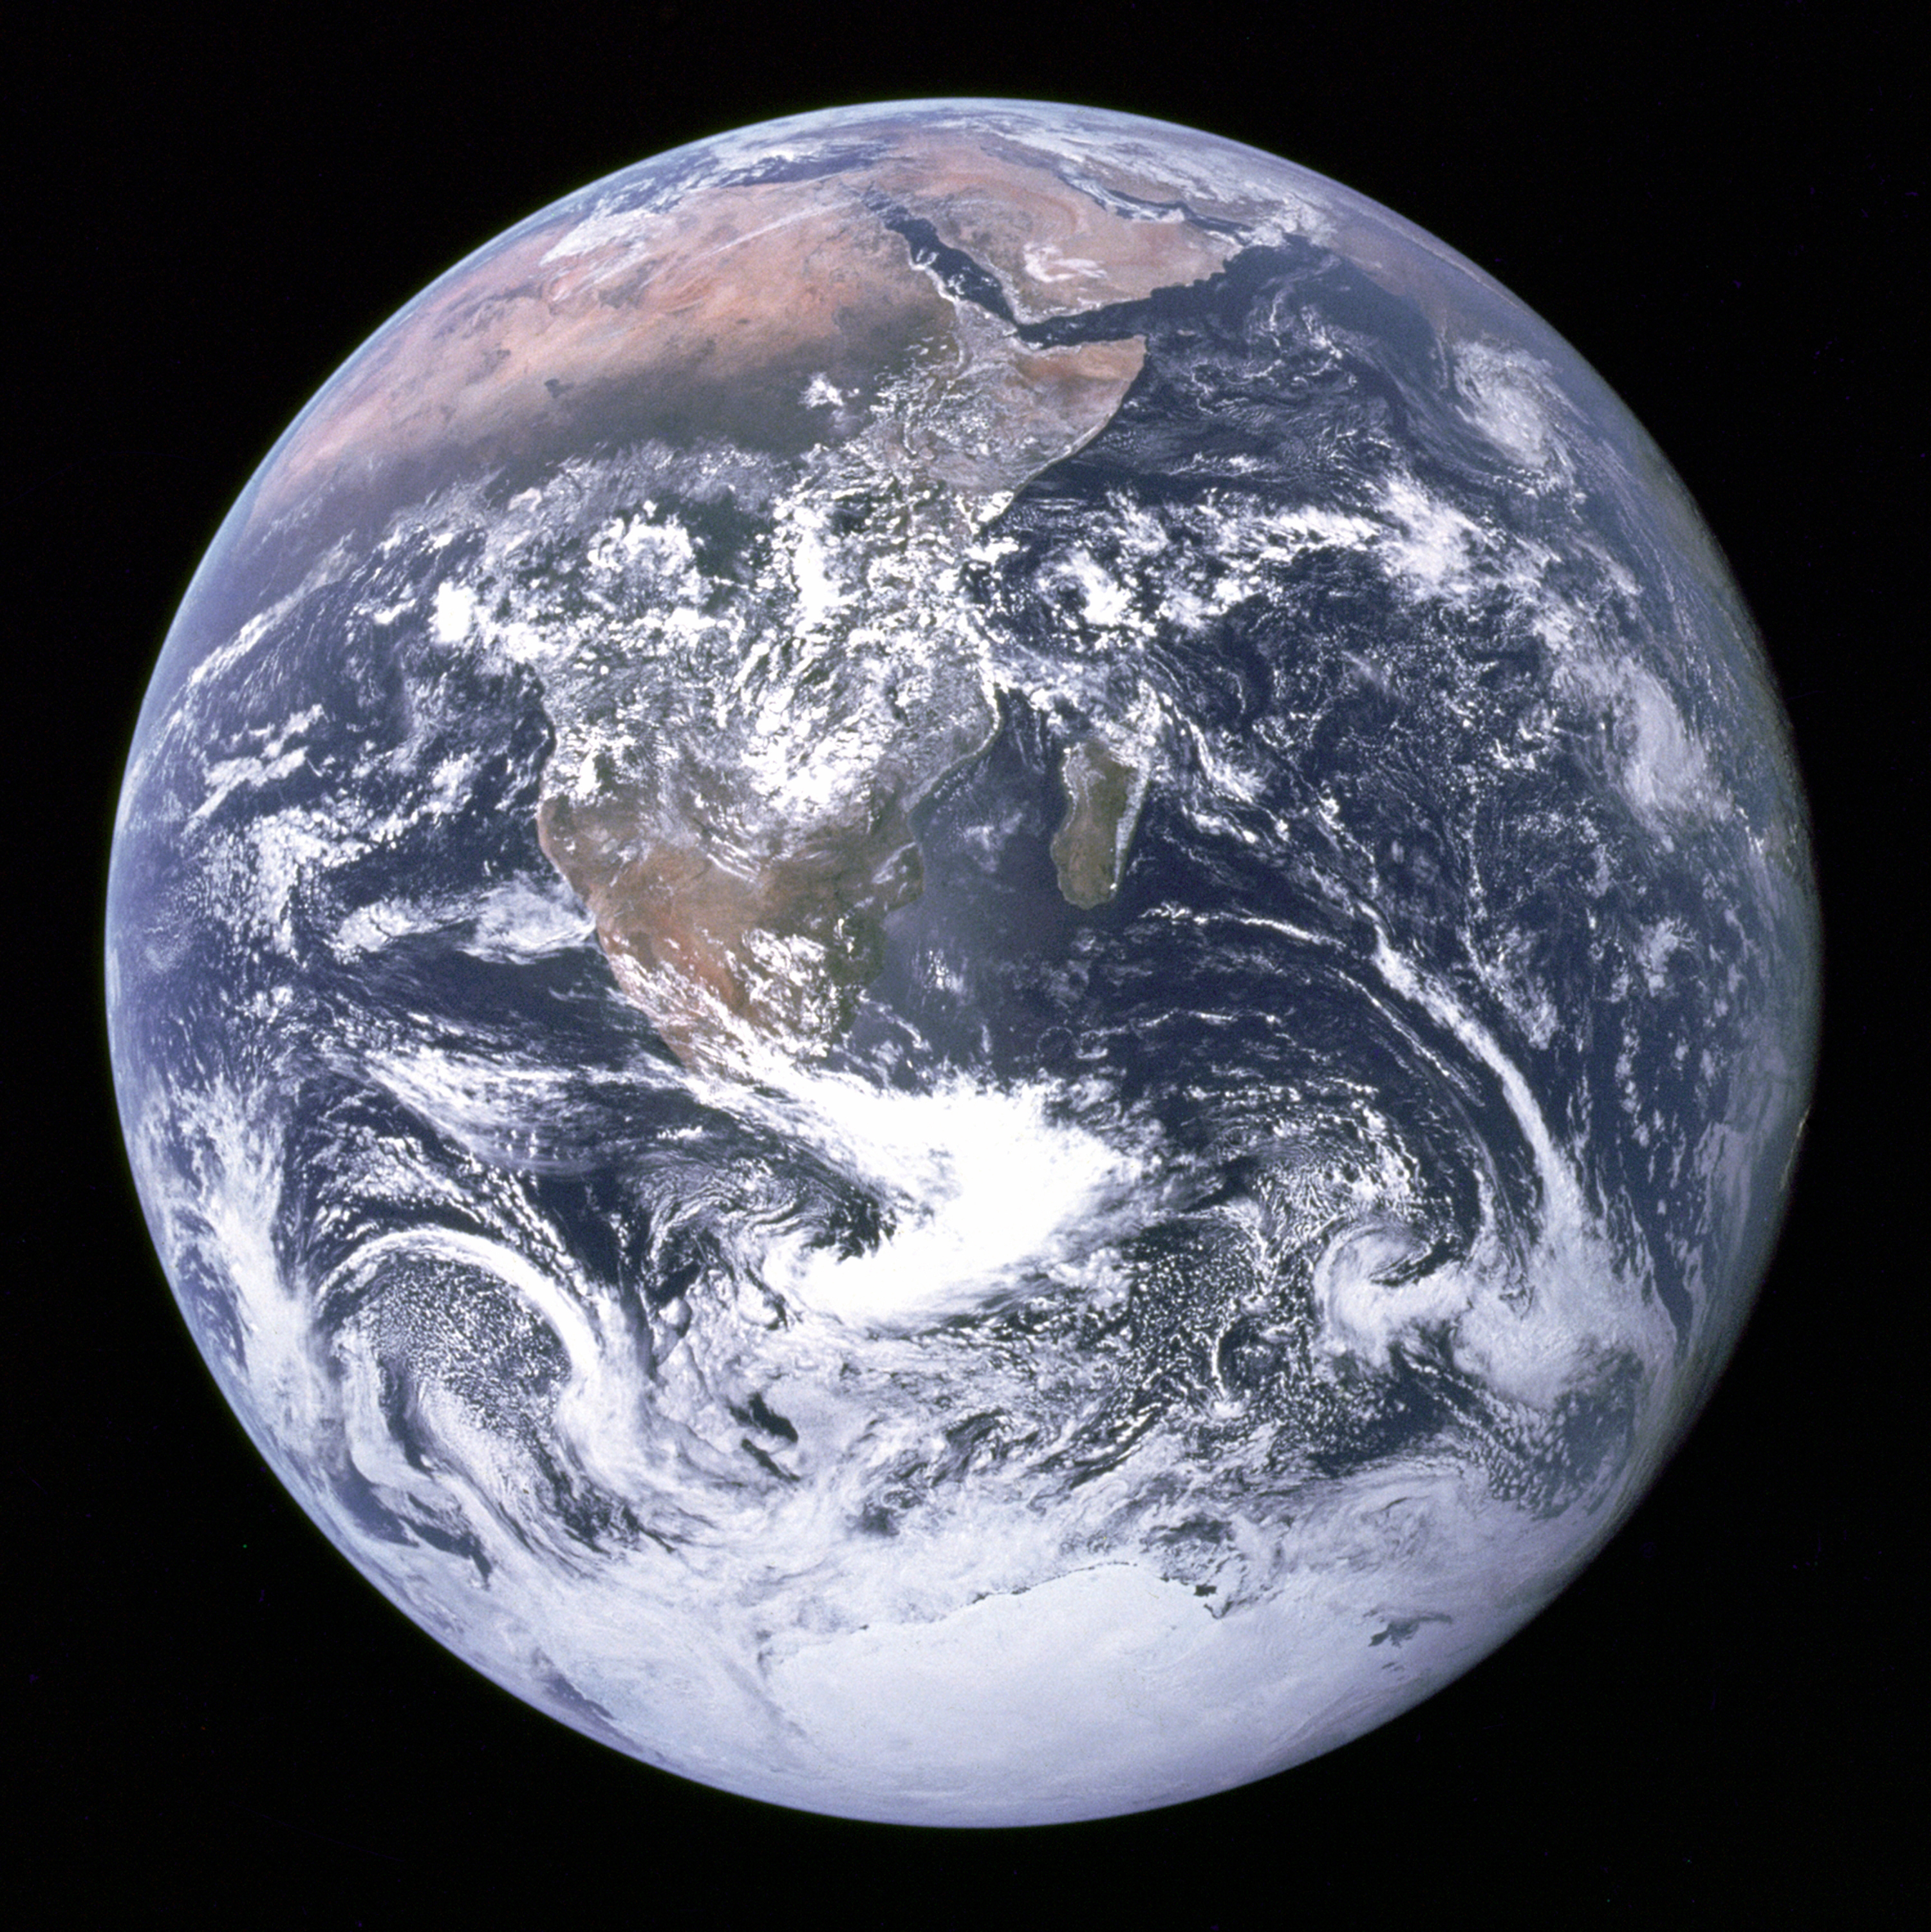 Una de las primeras imágenes de Tierra completa desde el espacio: conocida como “la canica azul”, fue tomada por la tripulación del Apolo 17 en 1972. Foto: NASA